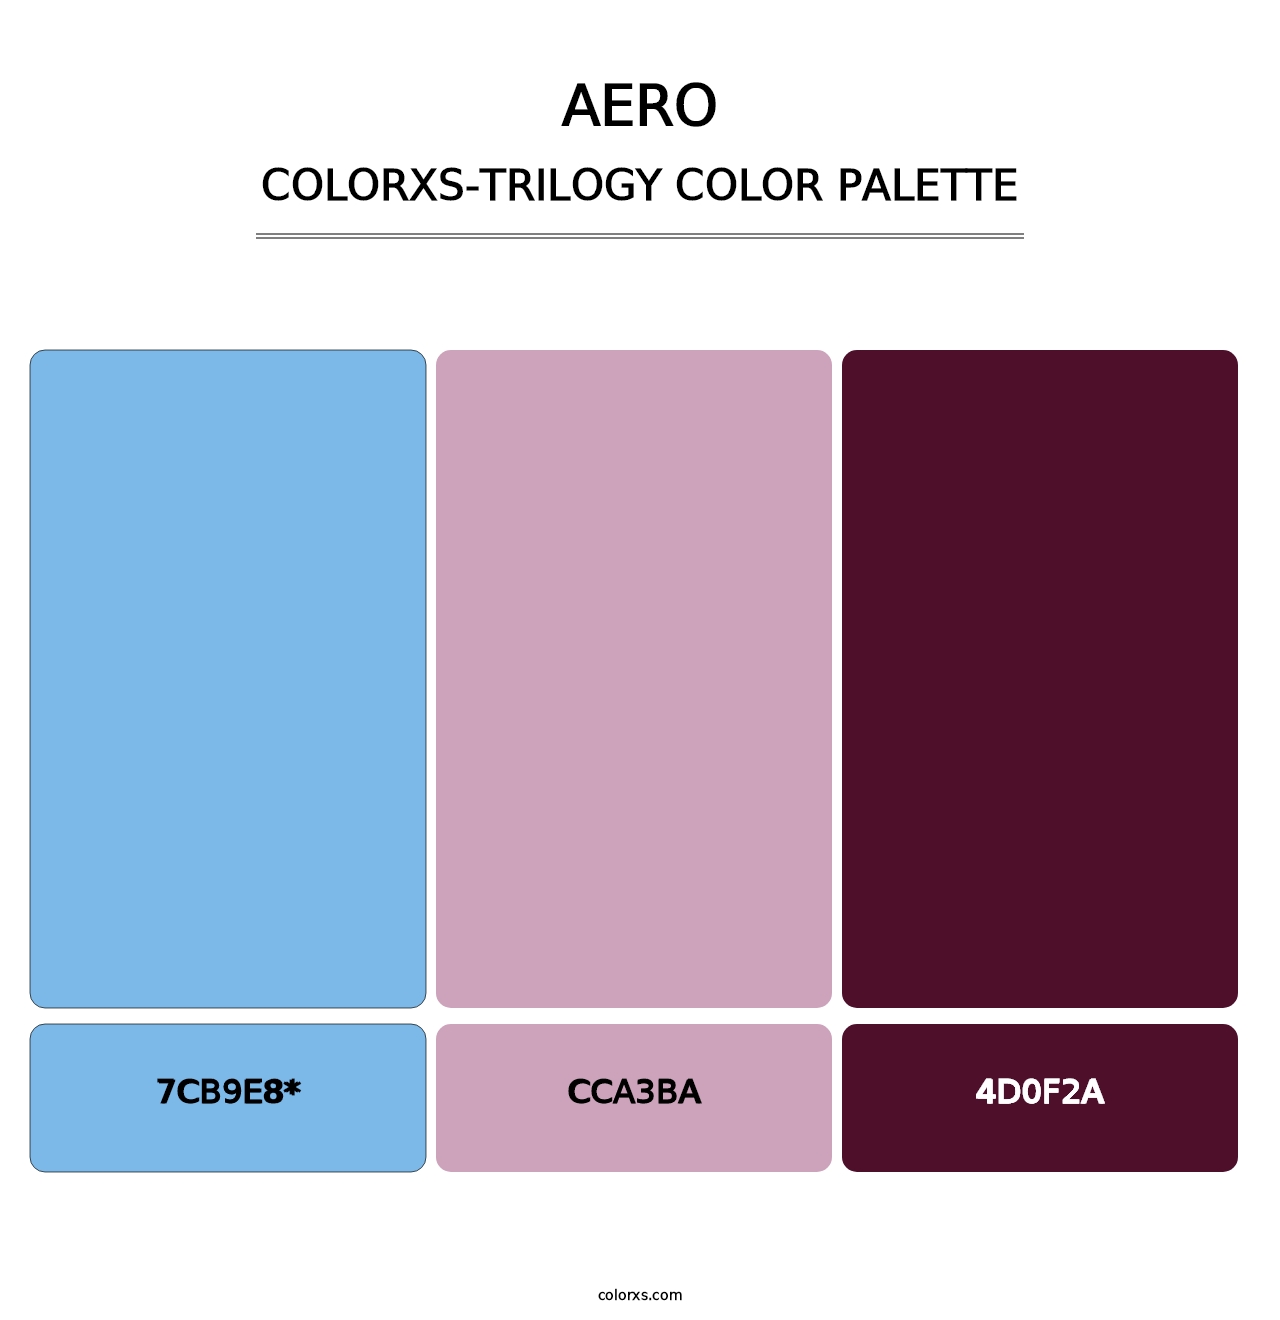 Aero - Colorxs Trilogy Palette